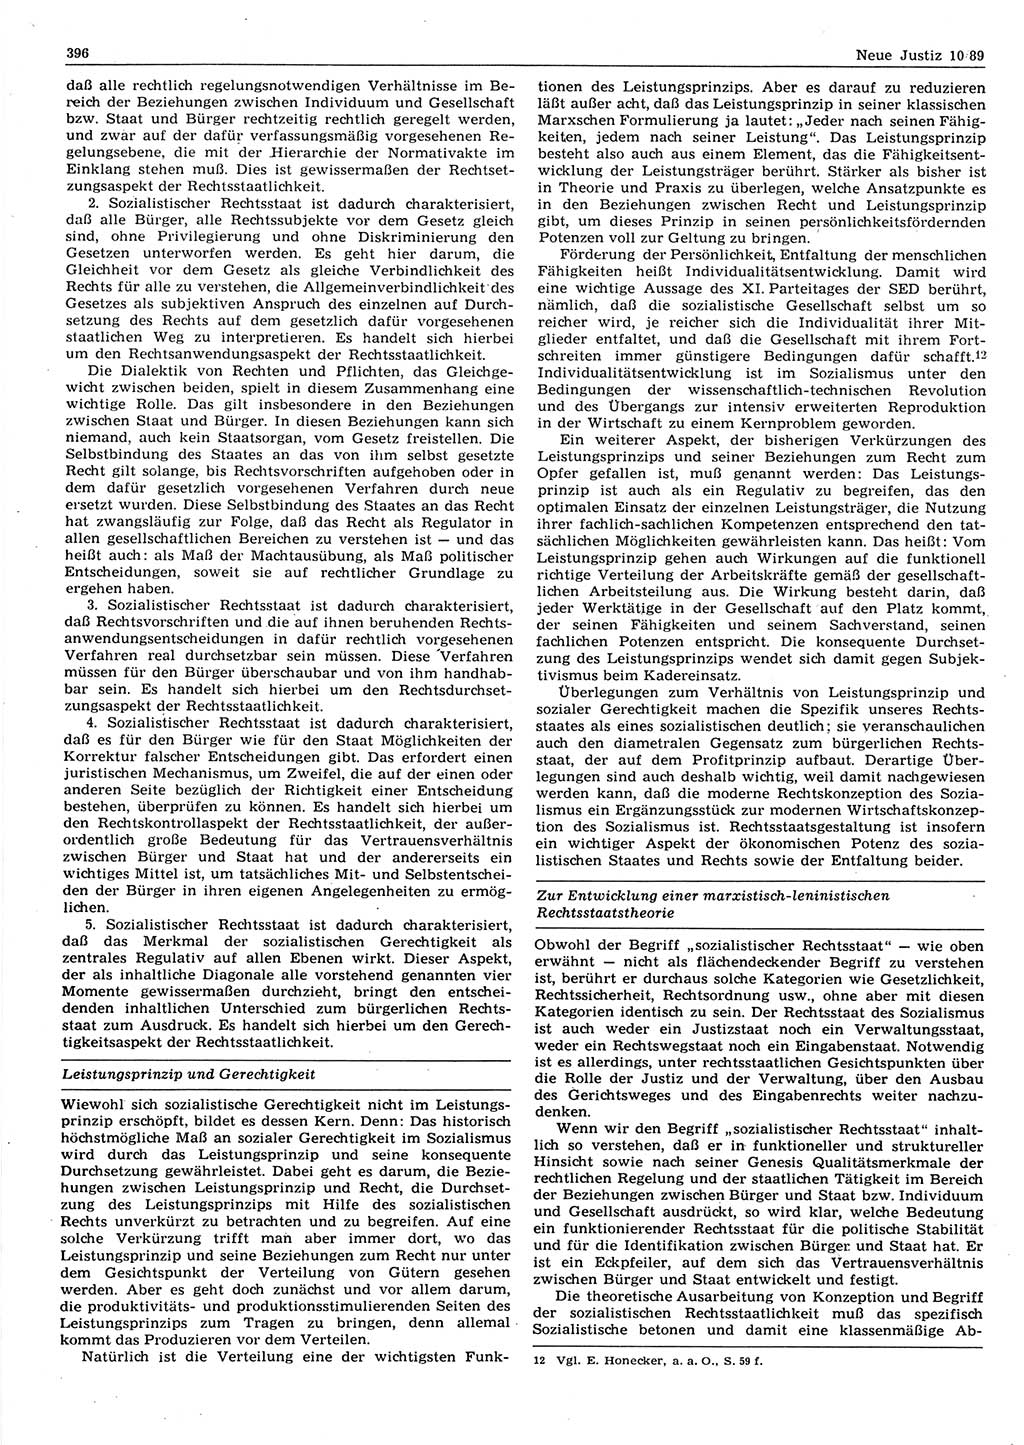 Neue Justiz (NJ), Zeitschrift für sozialistisches Recht und Gesetzlichkeit [Deutsche Demokratische Republik (DDR)], 43. Jahrgang 1989, Seite 396 (NJ DDR 1989, S. 396)